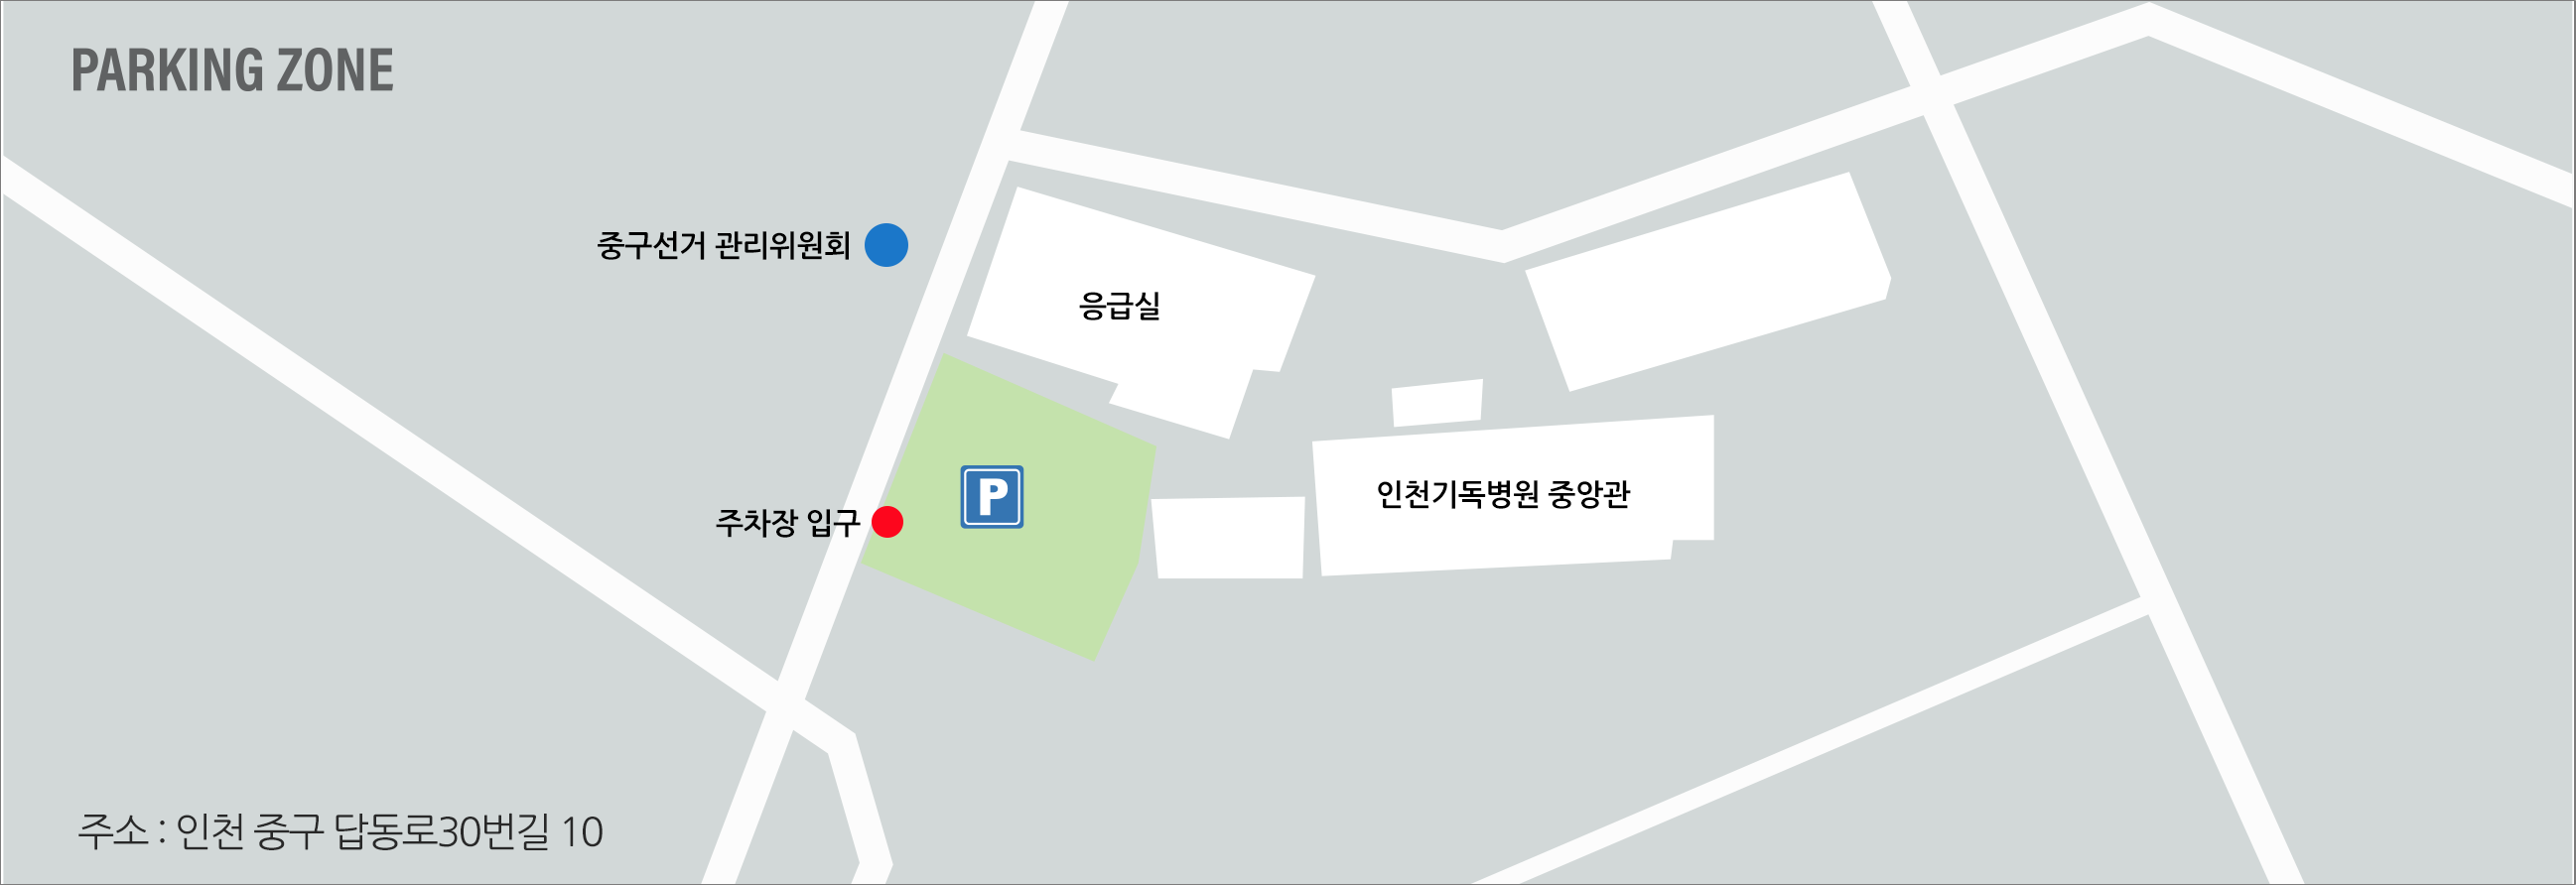 주소 : 인천 중구 답동로 30번길 10